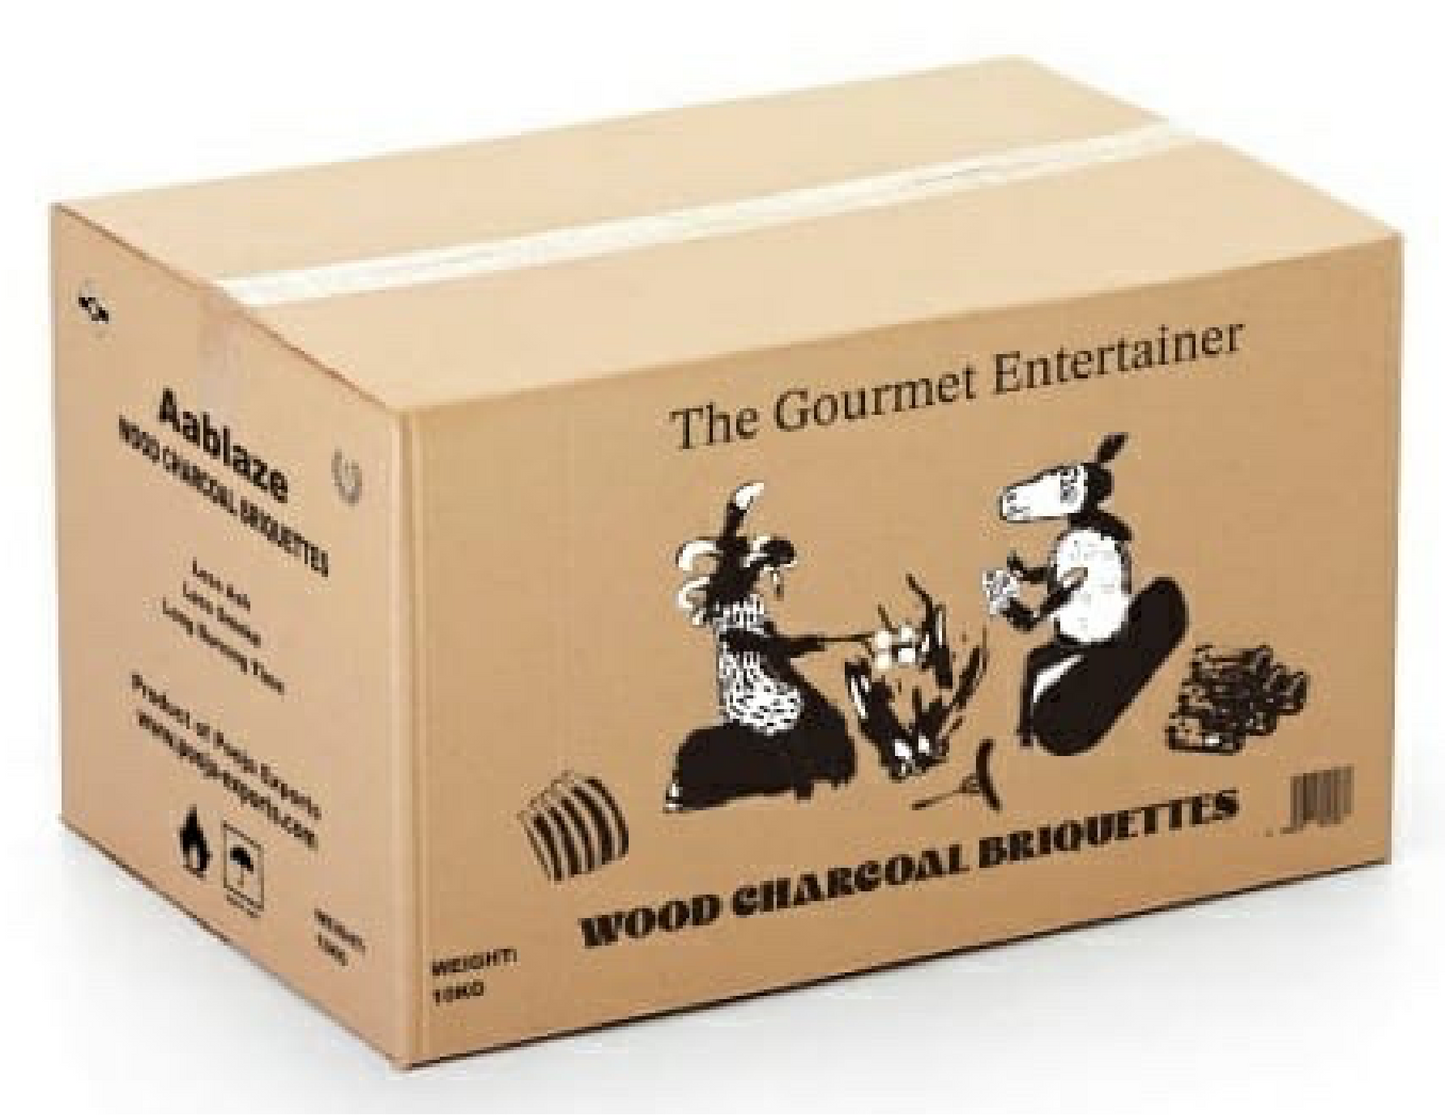 Charcoal Briquette 10kg box